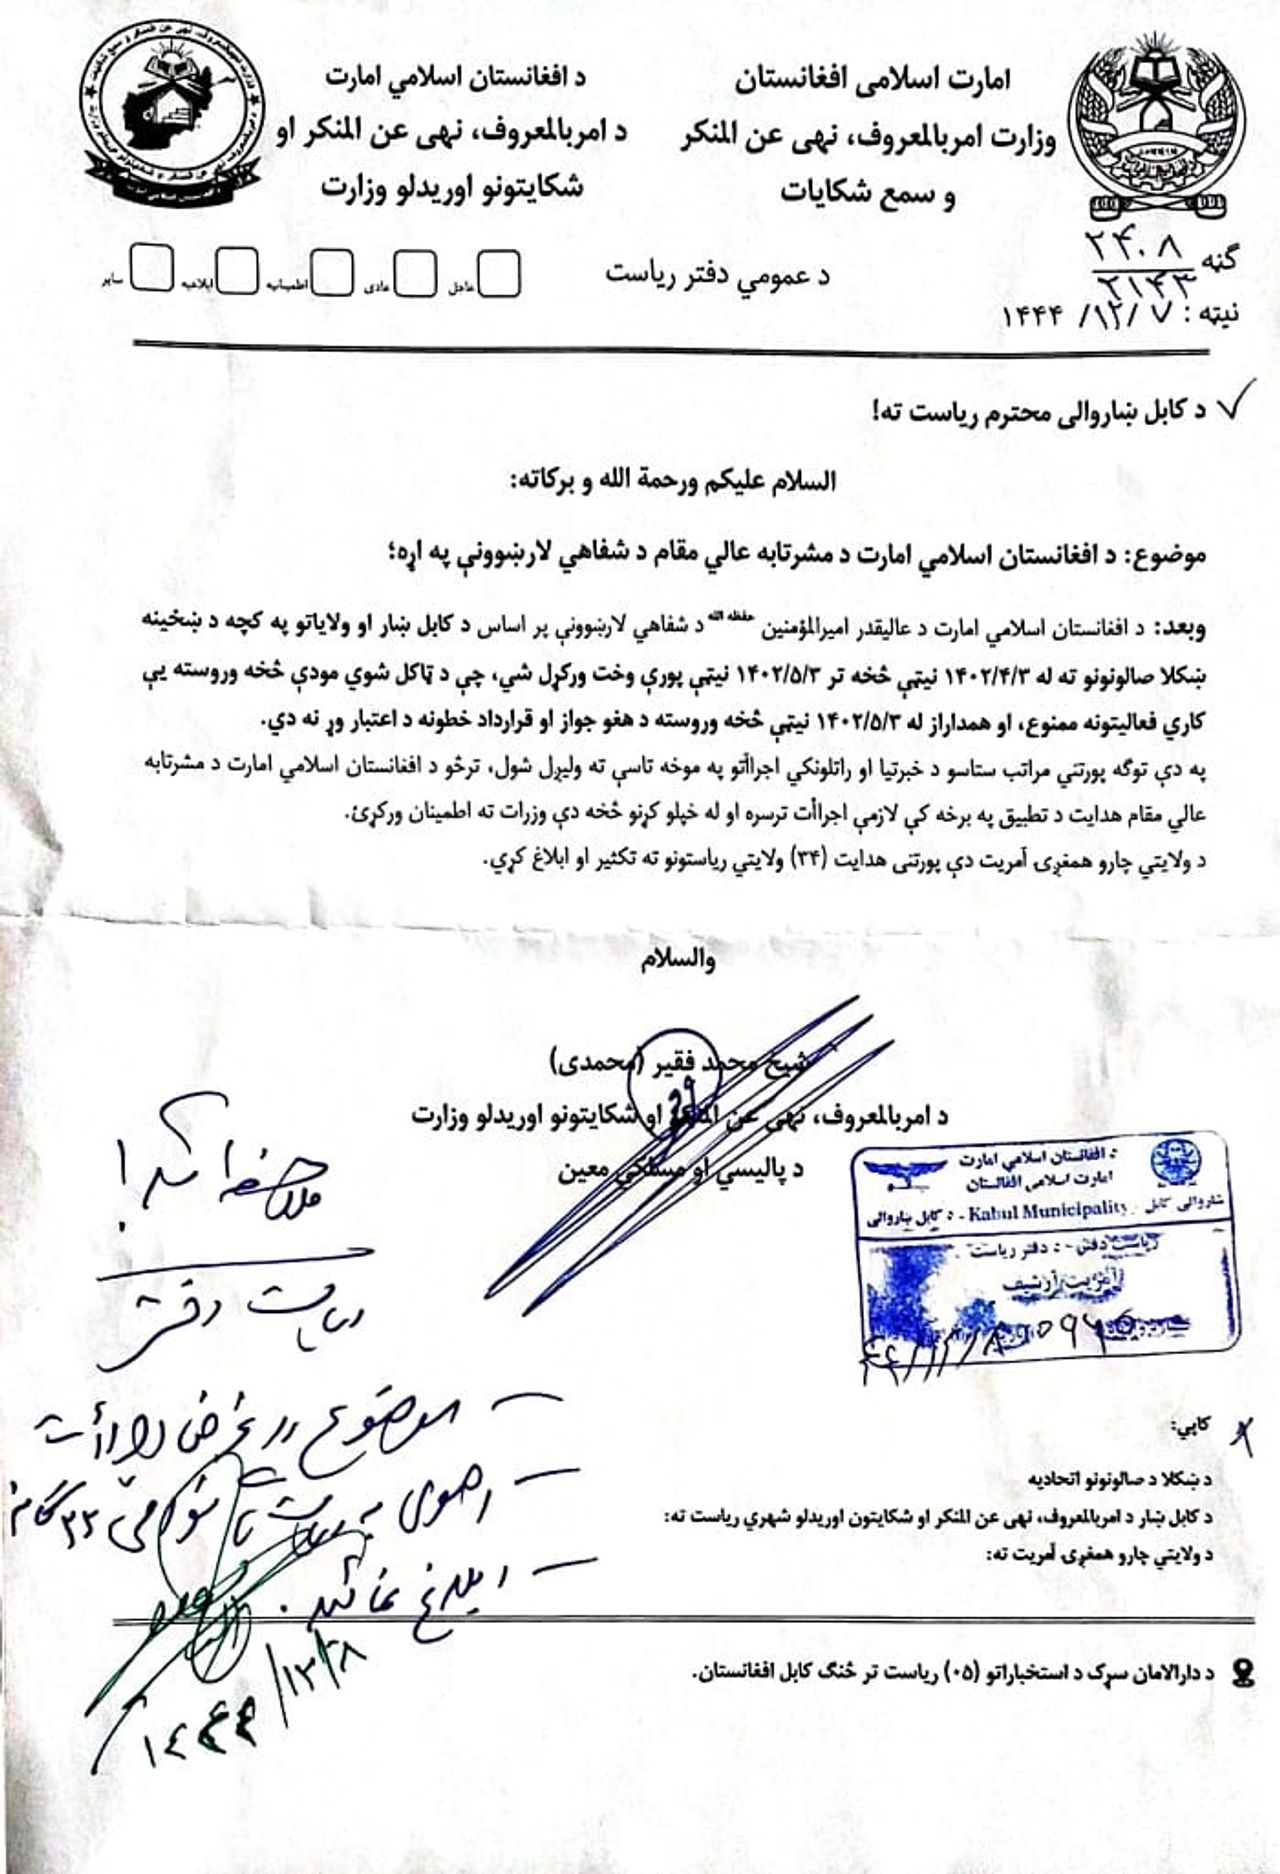 حاکمیت فرمان منع فعالیت آرایشگاه‌های زنانه را در افغانستان را اعلام کرد -  وزارت امر به معروف حکومت سرپرست به تمامیه آرایشگاه‌های زنانه یک ماه فرصت داده که به فعالیت‌های خود پایان دهند و محل کار خود را ببندند.